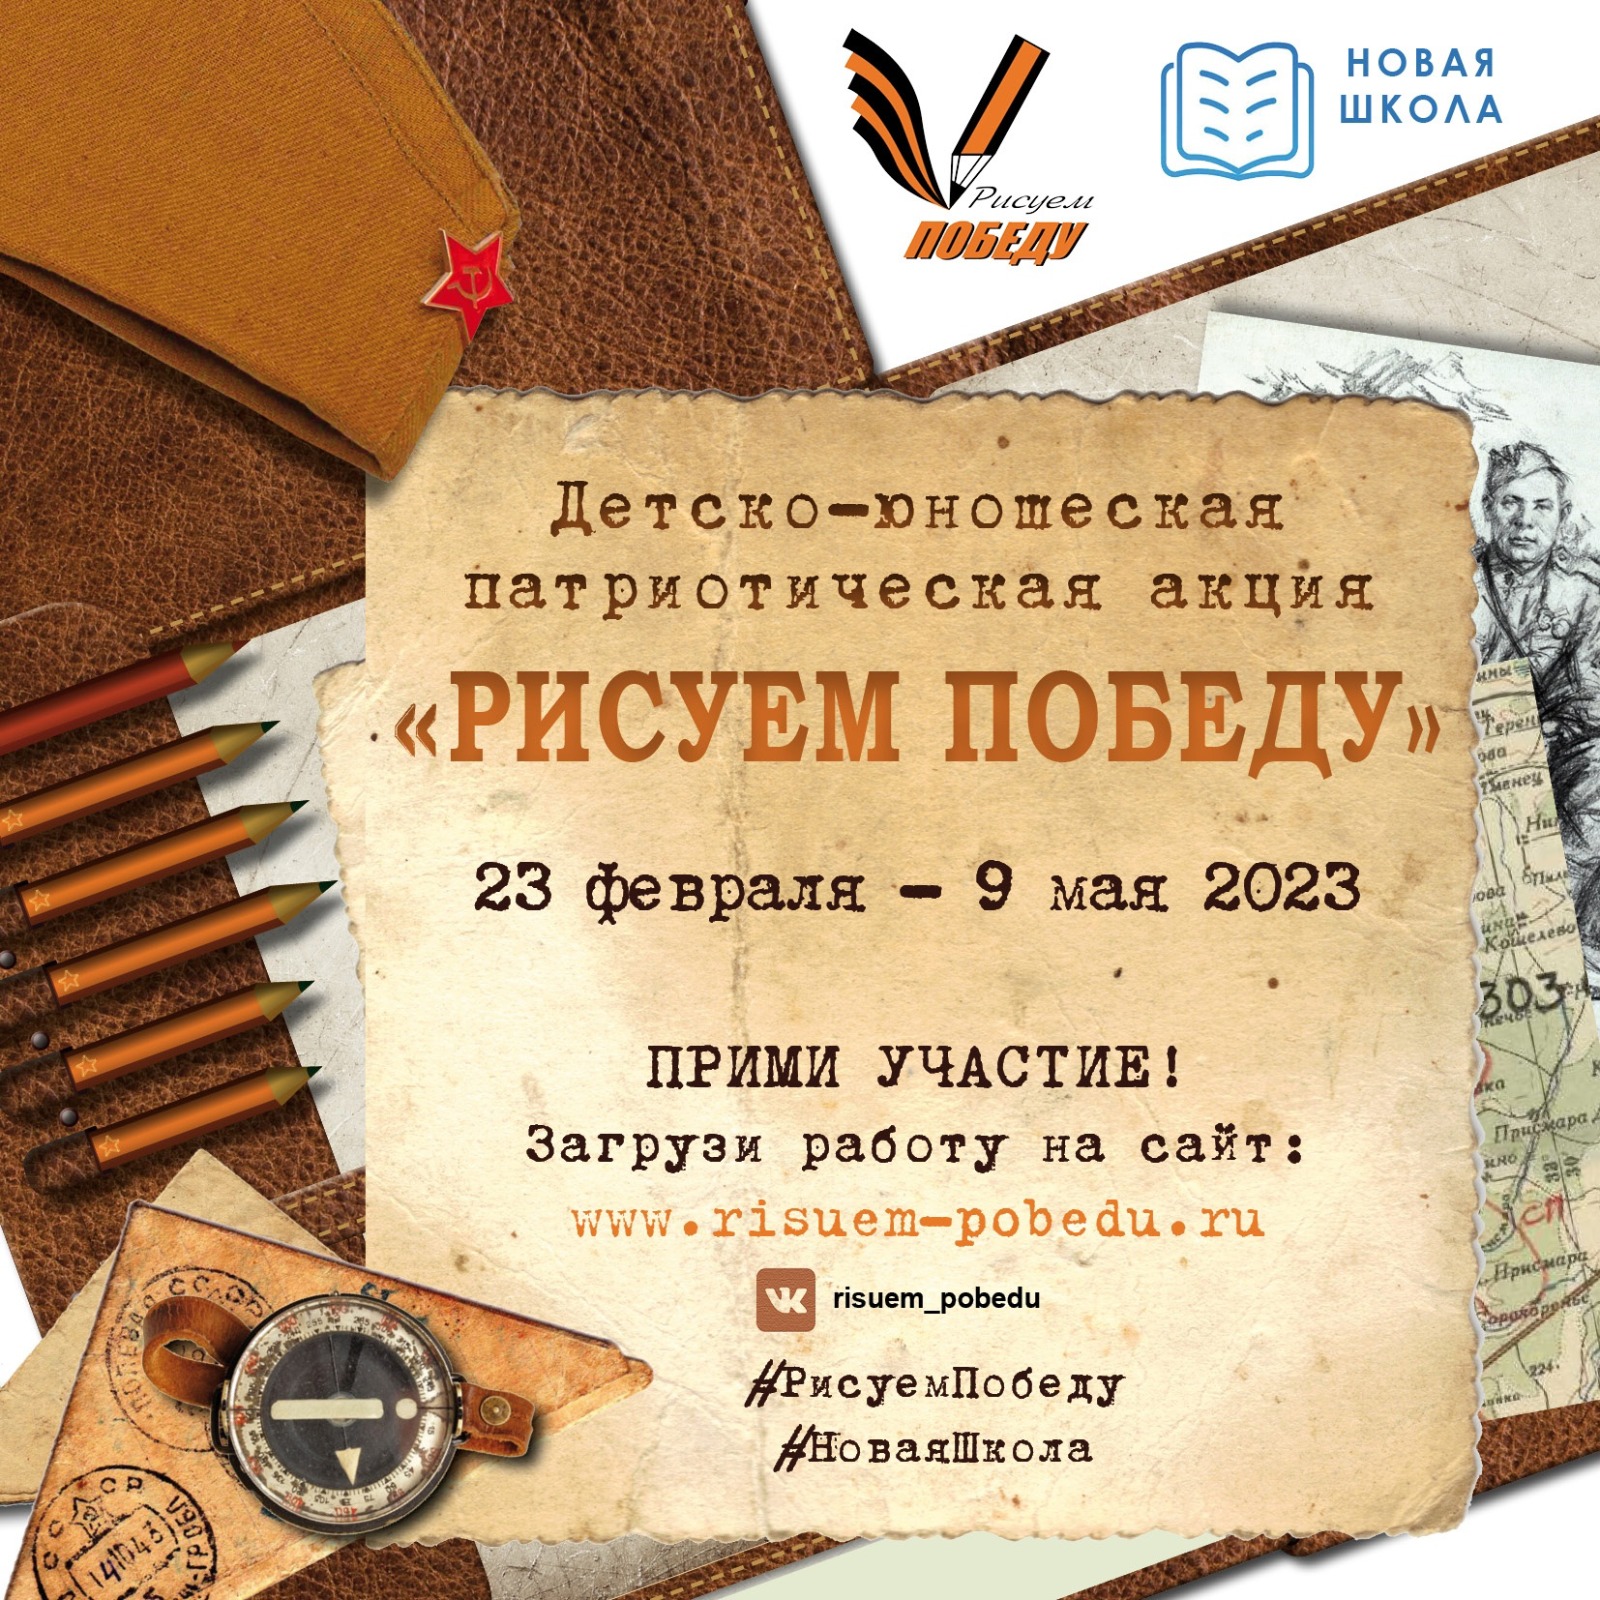 https://risuem-pobedu.ru/assets/doc/Polozhenie_Risuem_Pobedu-2023.pdf.